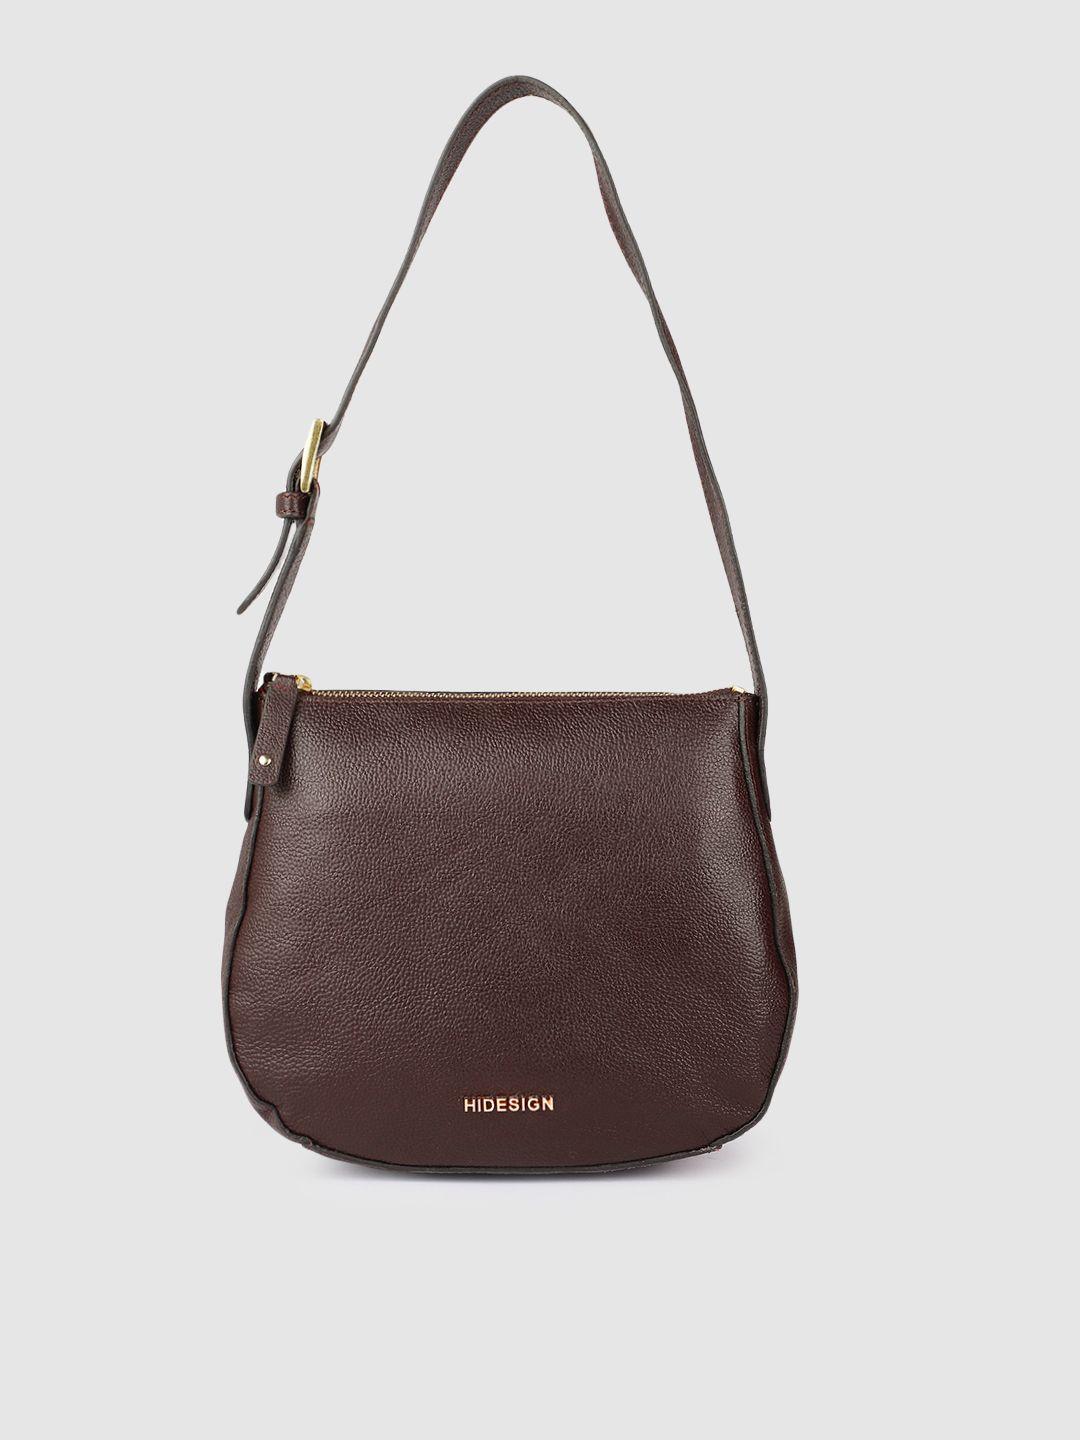 hidesign brown leather solid shoulder bag